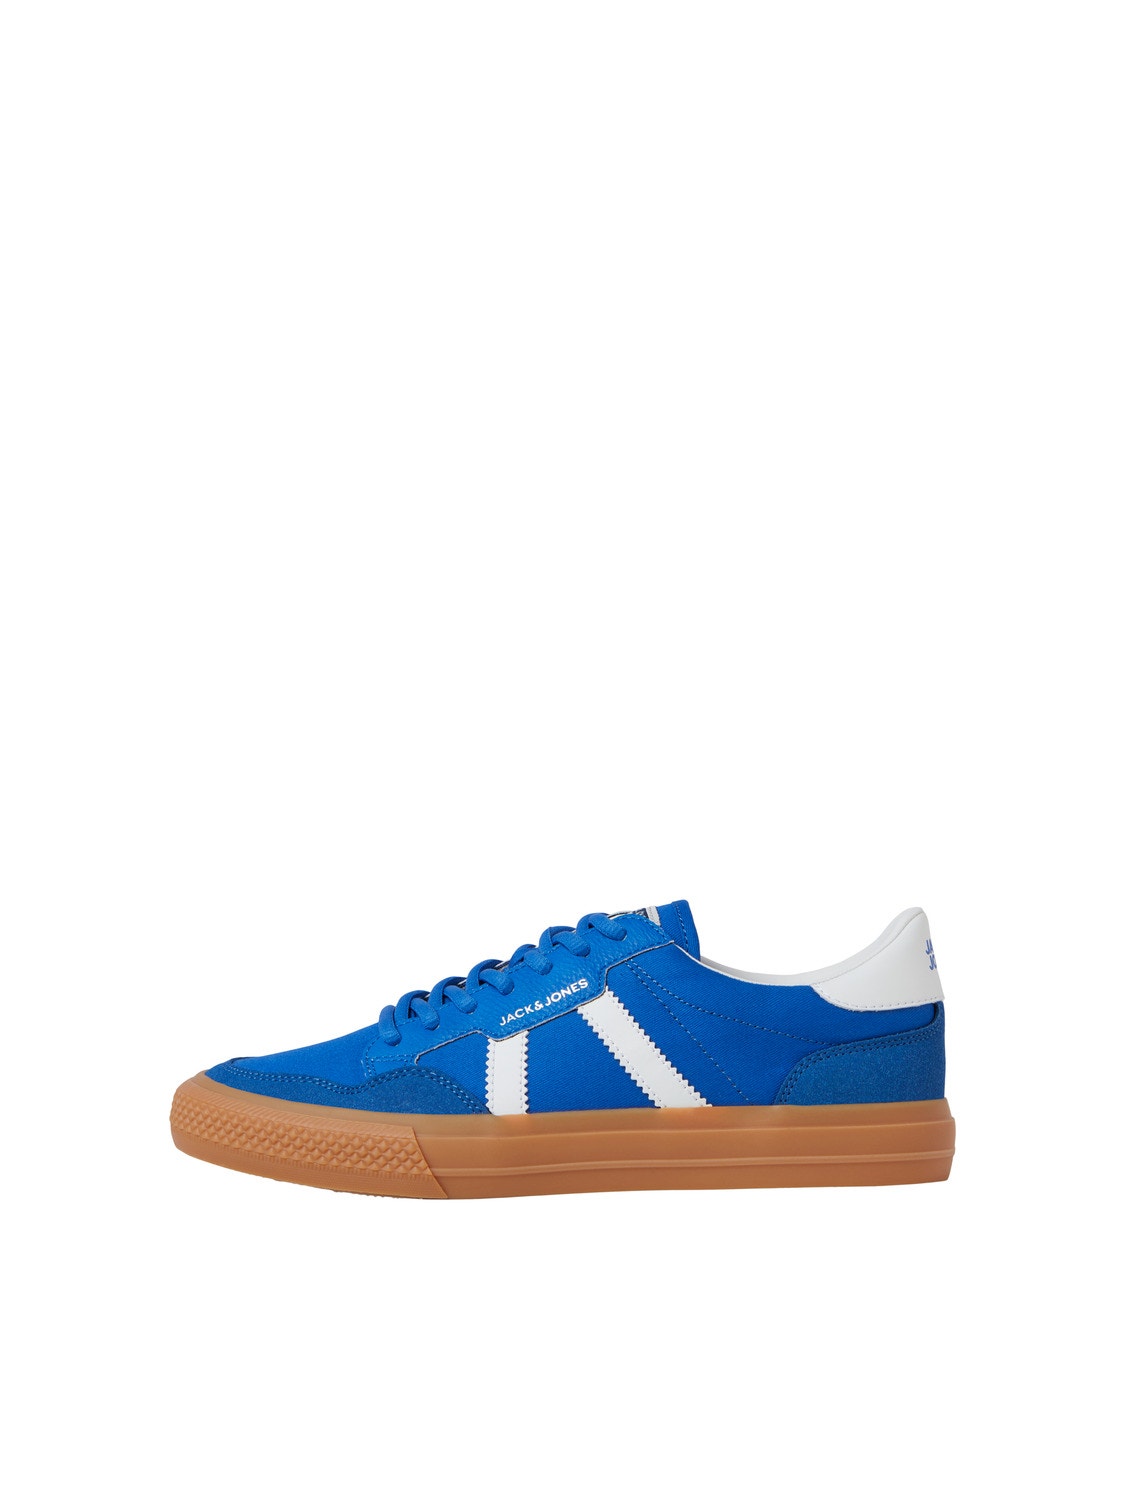 Jack & Jones Rubber Sneaker -Imperial Blue - 12251152